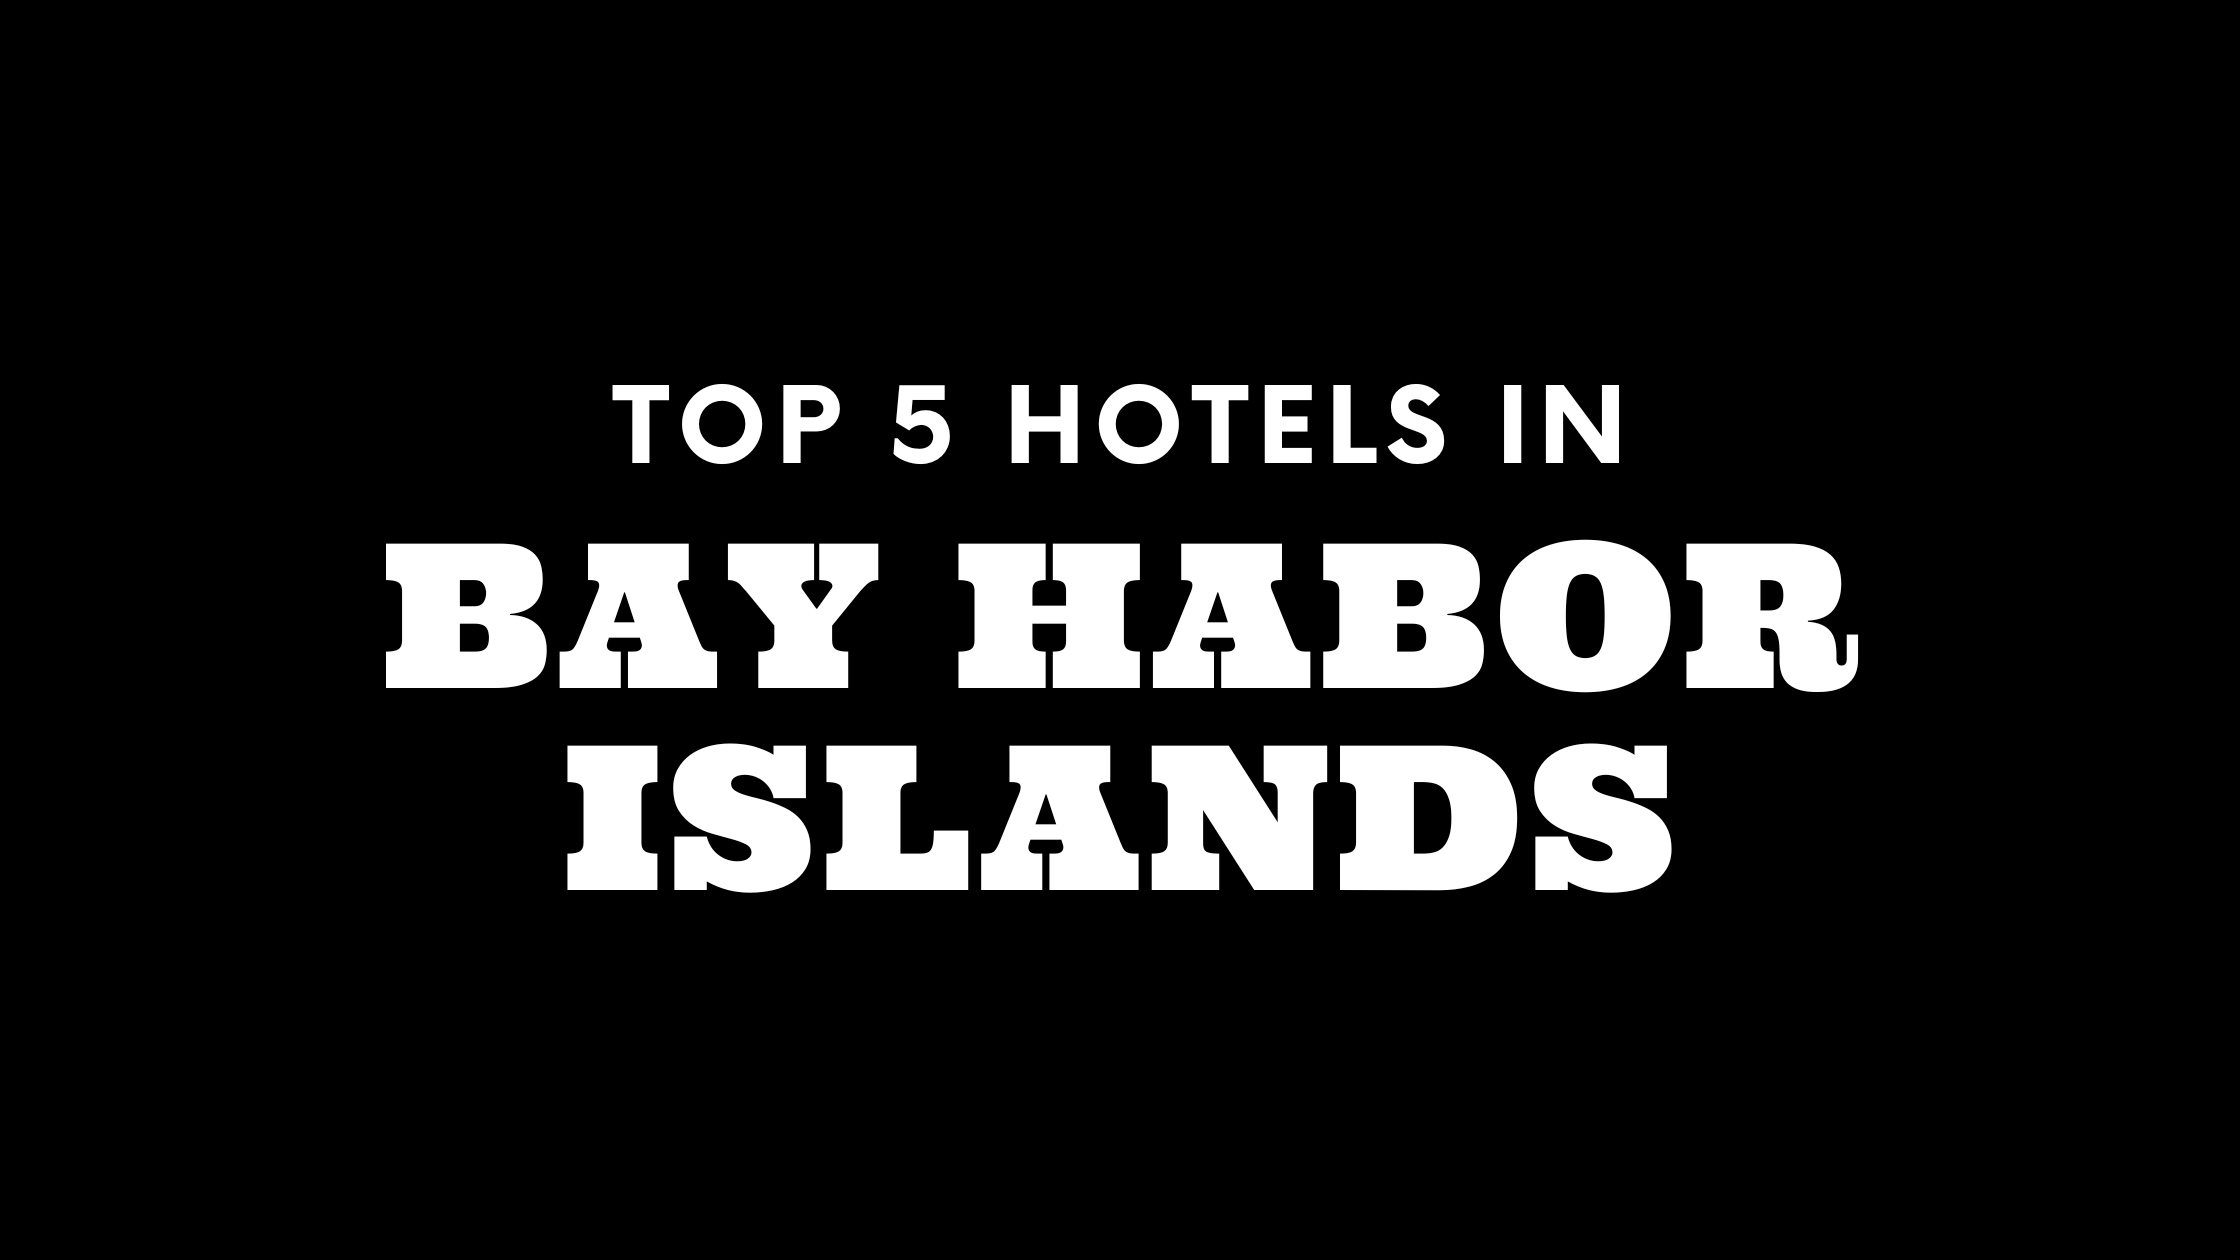 Top 5 Hotels in Bay Harbor Islands